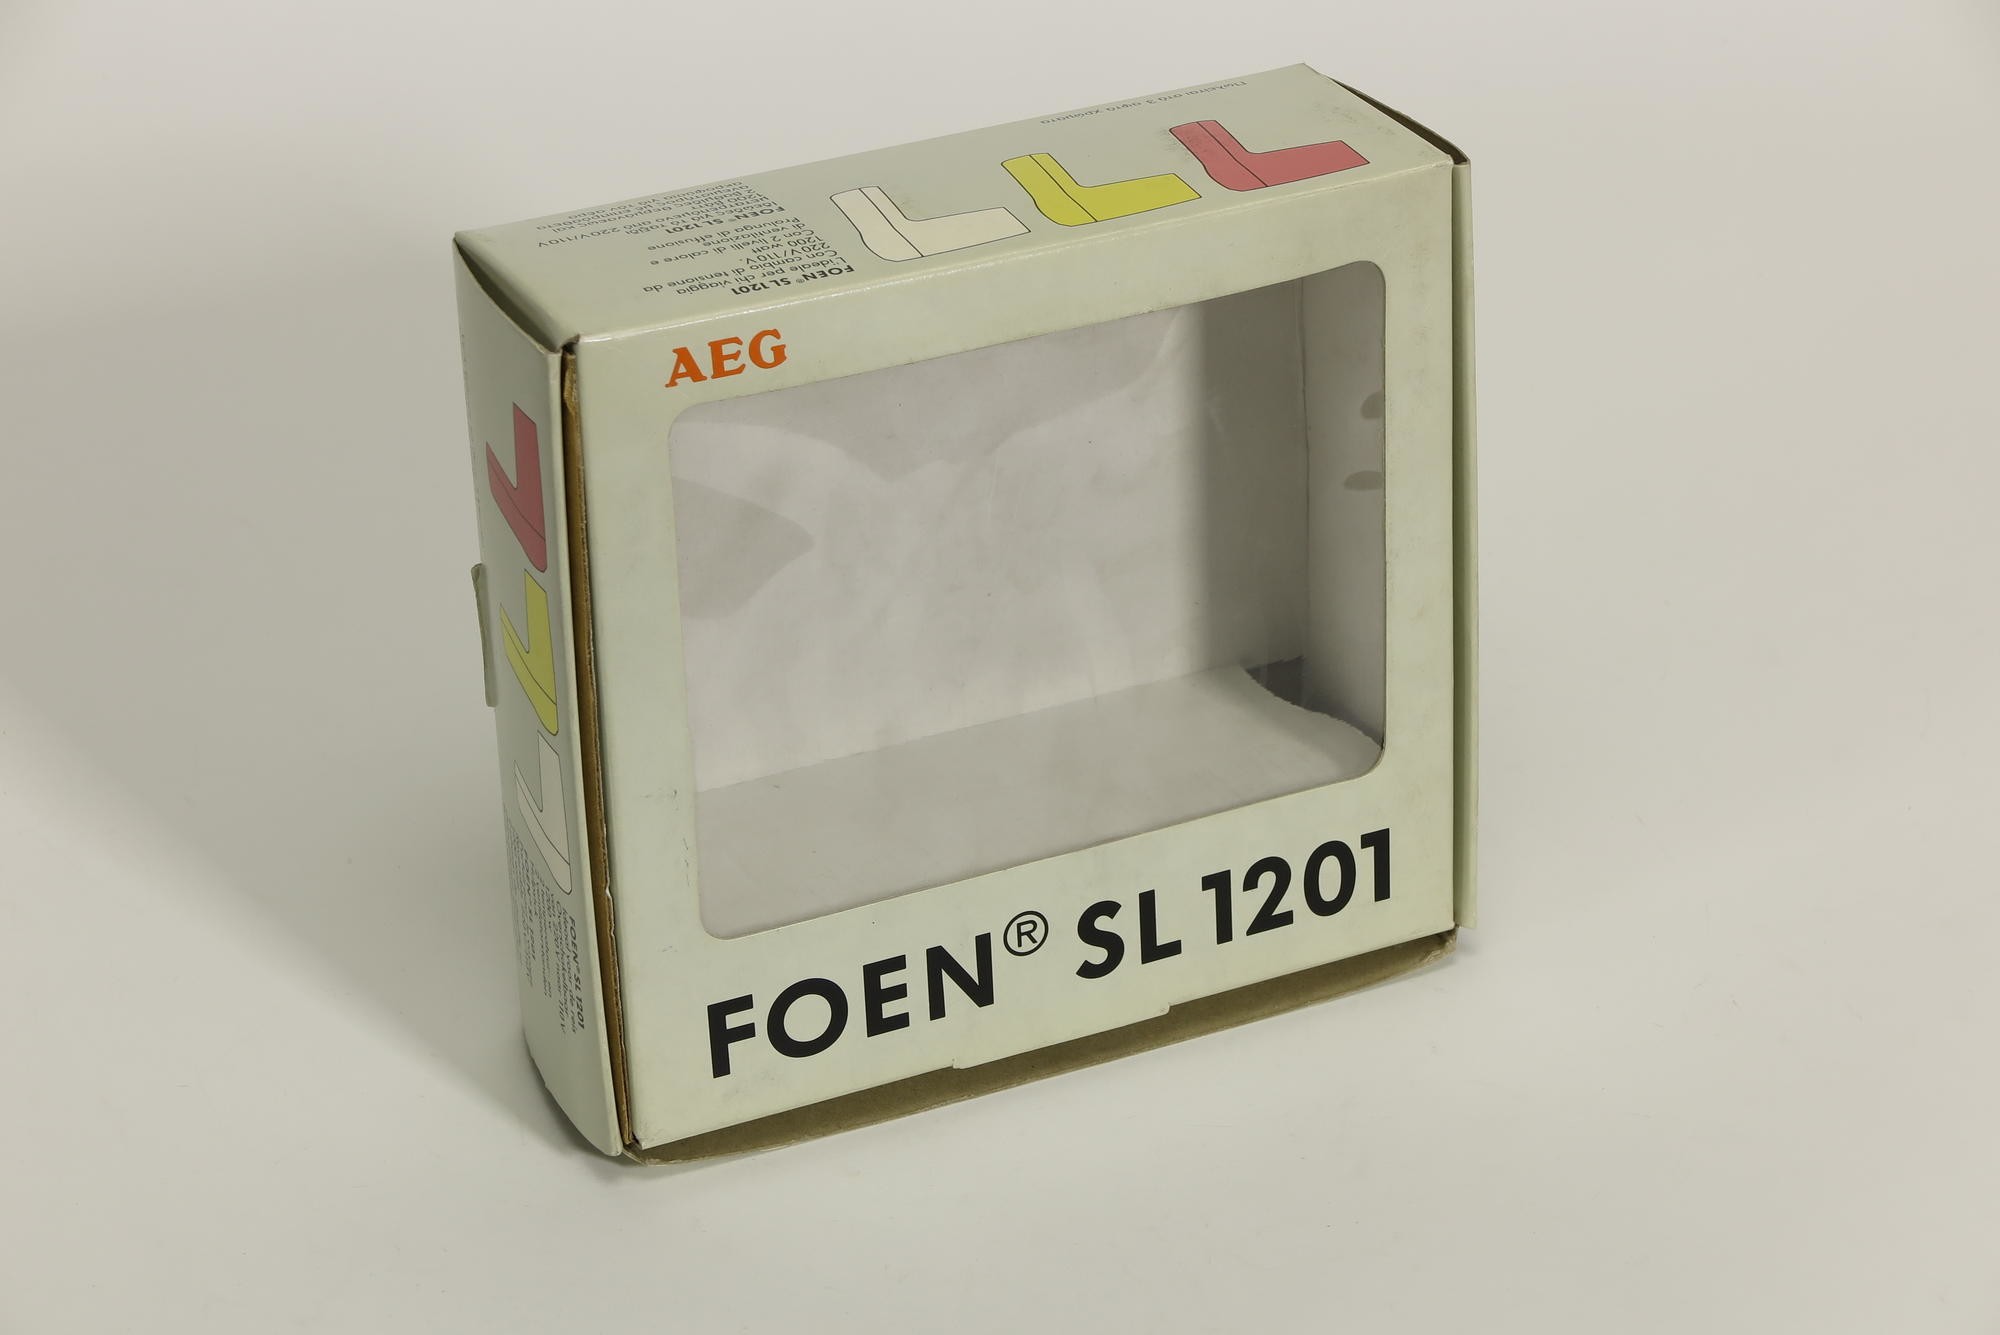 Verpackungskarton, Zubehör zu Elektrischer Haartrockner AEG `Foen` Modell SL 1201 Typ 5016.1 (Stiftung Deutsches Technikmuseum Berlin CC0)